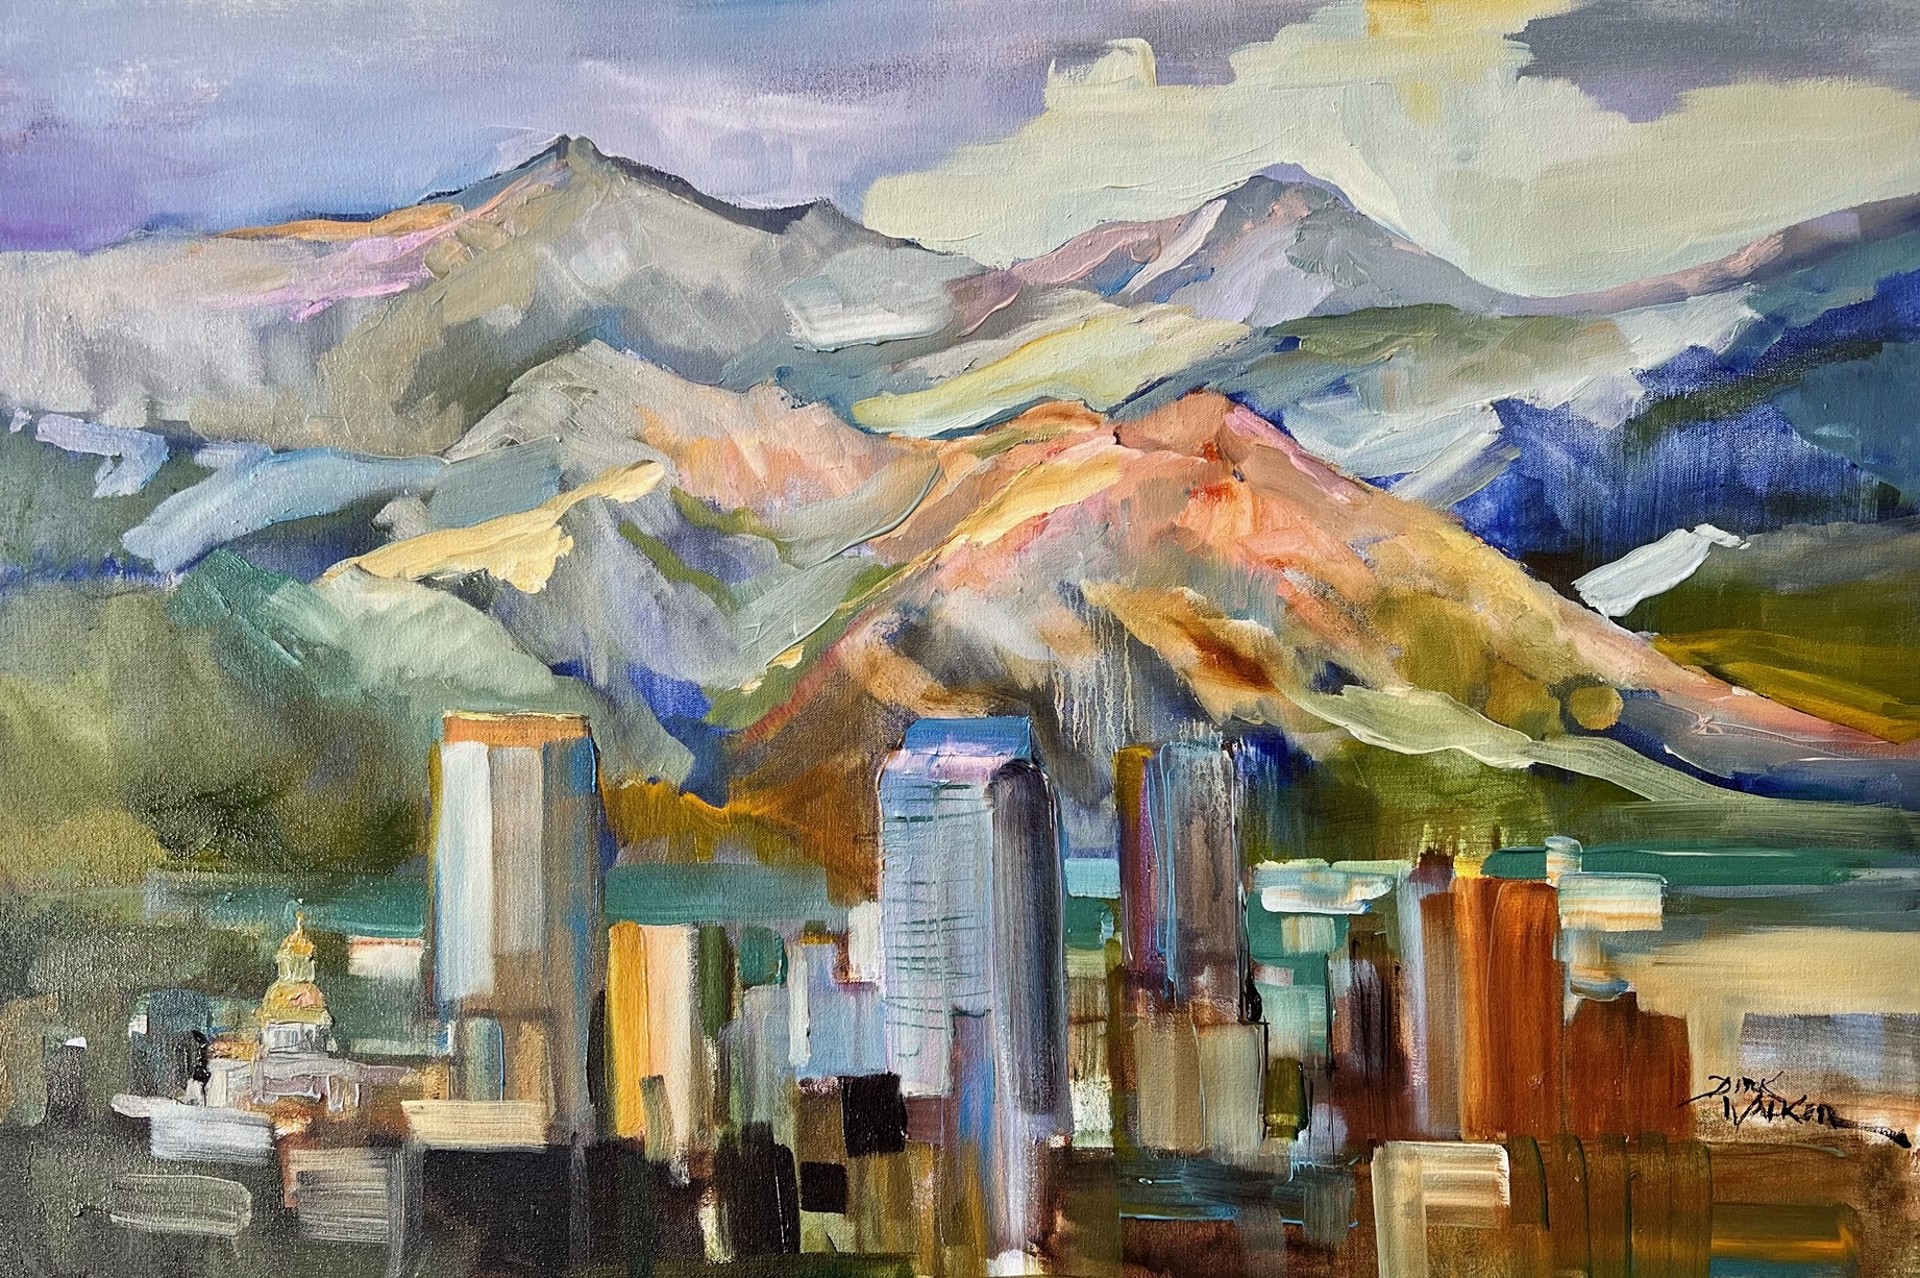 The Mile High City - Denver at Sunset by Dirk Walker